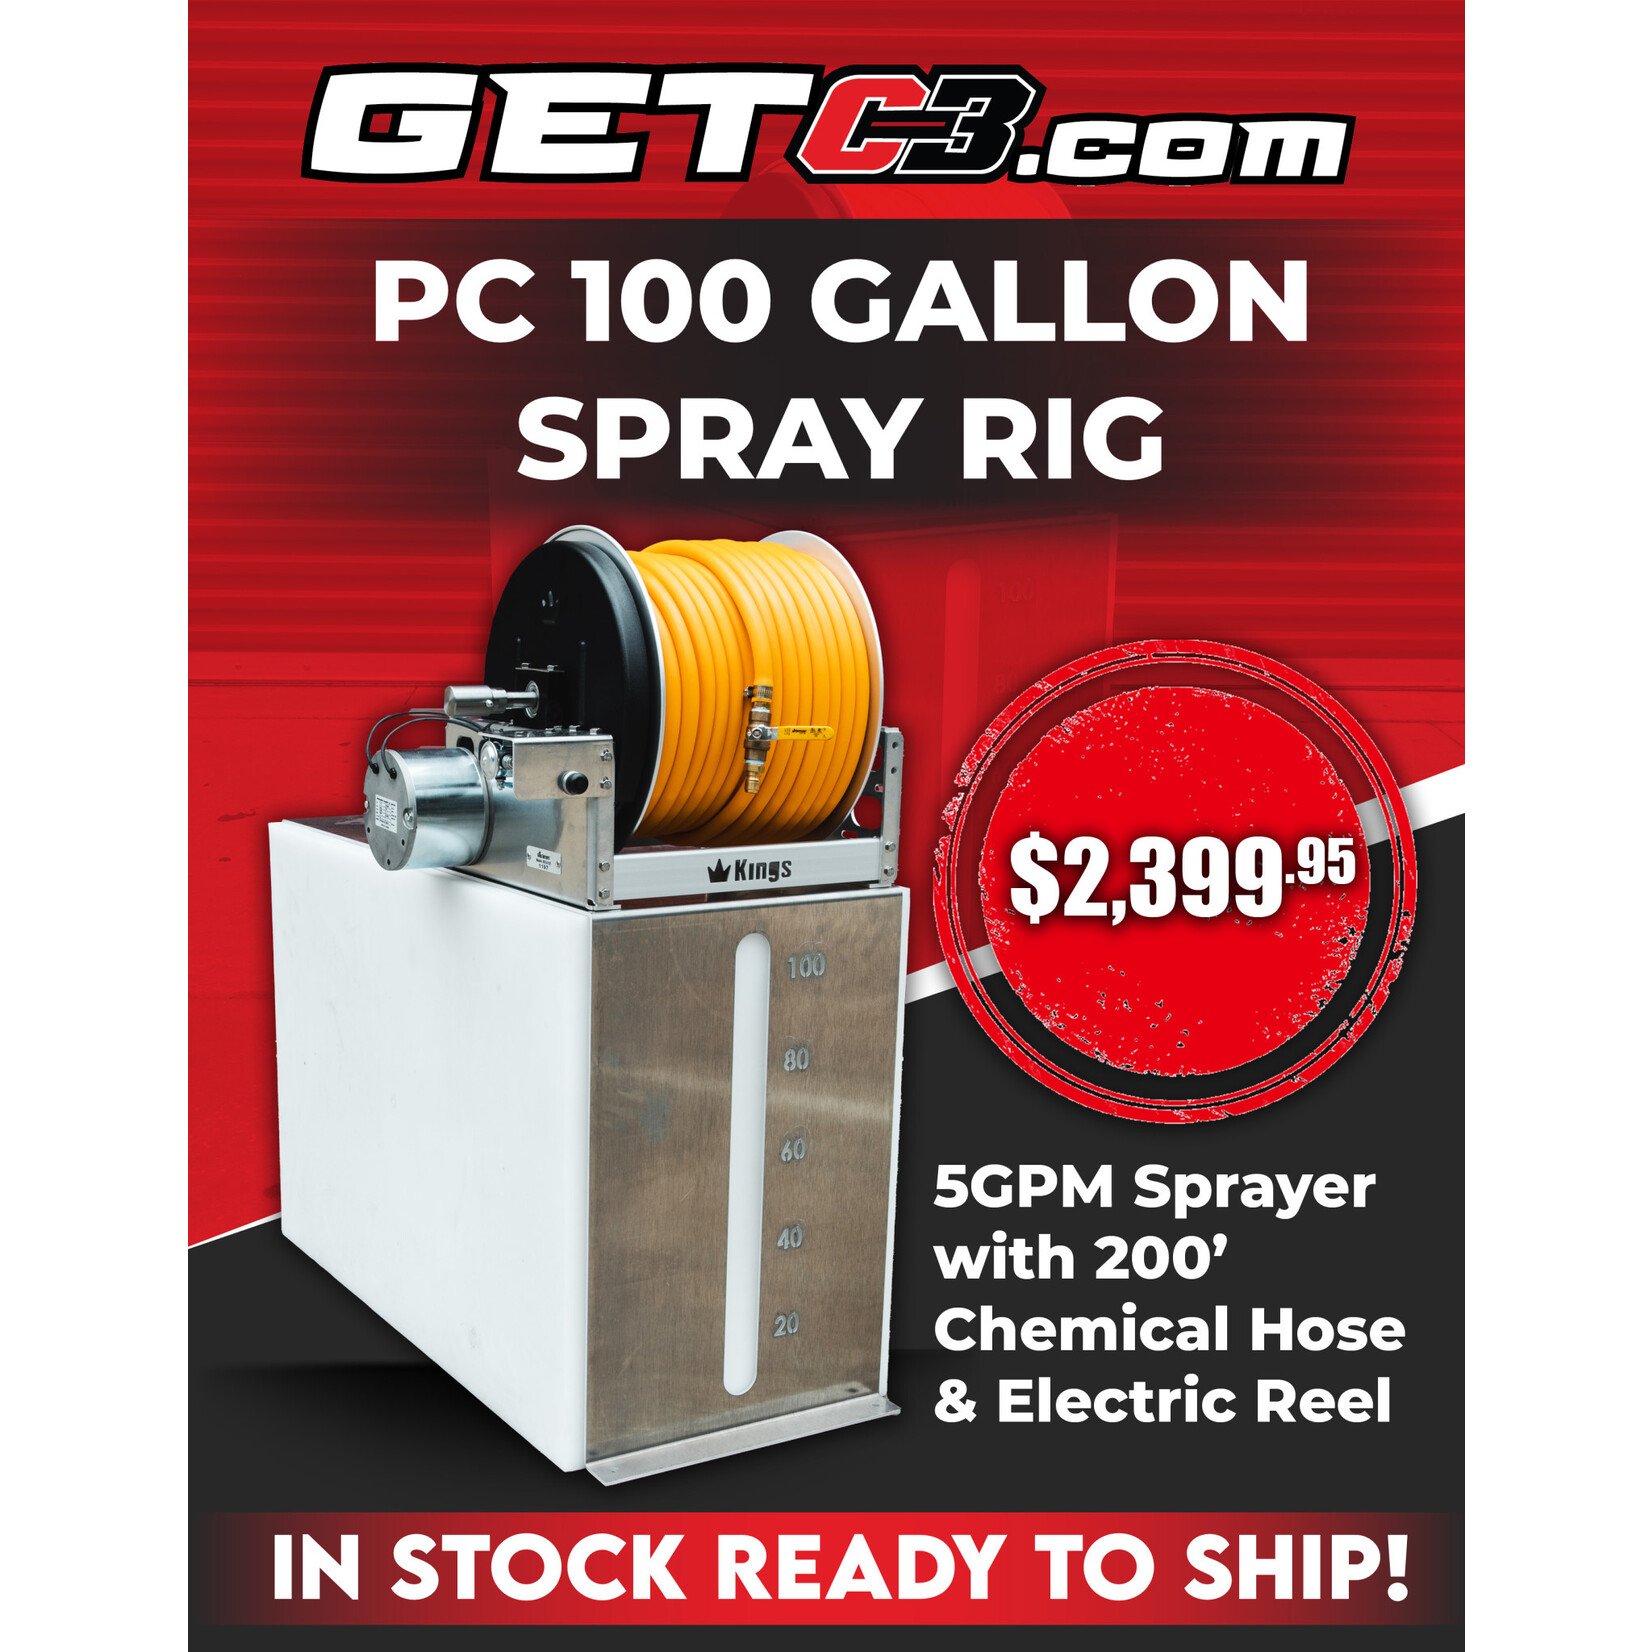 PC 100 Gallon Spray Rig